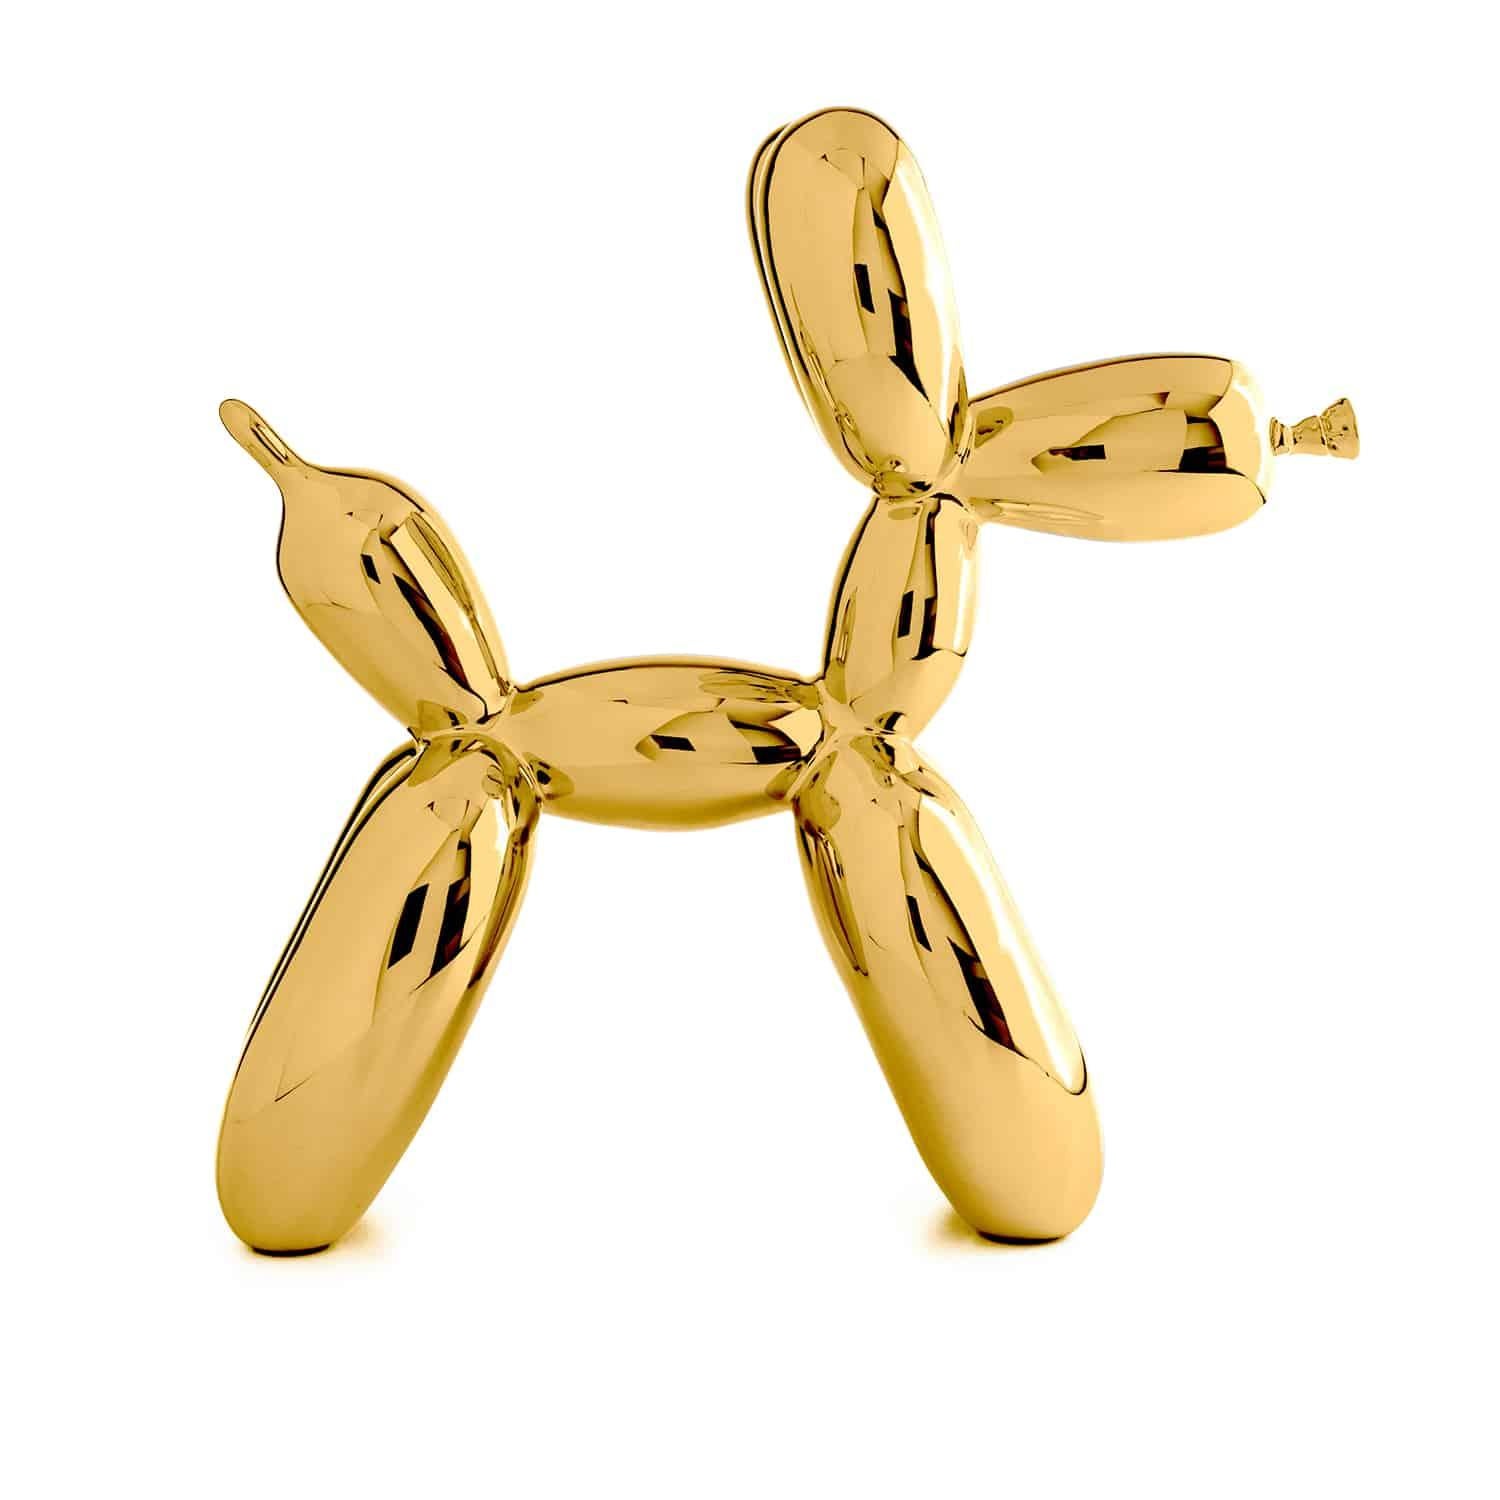 gold balloon dog sculpture